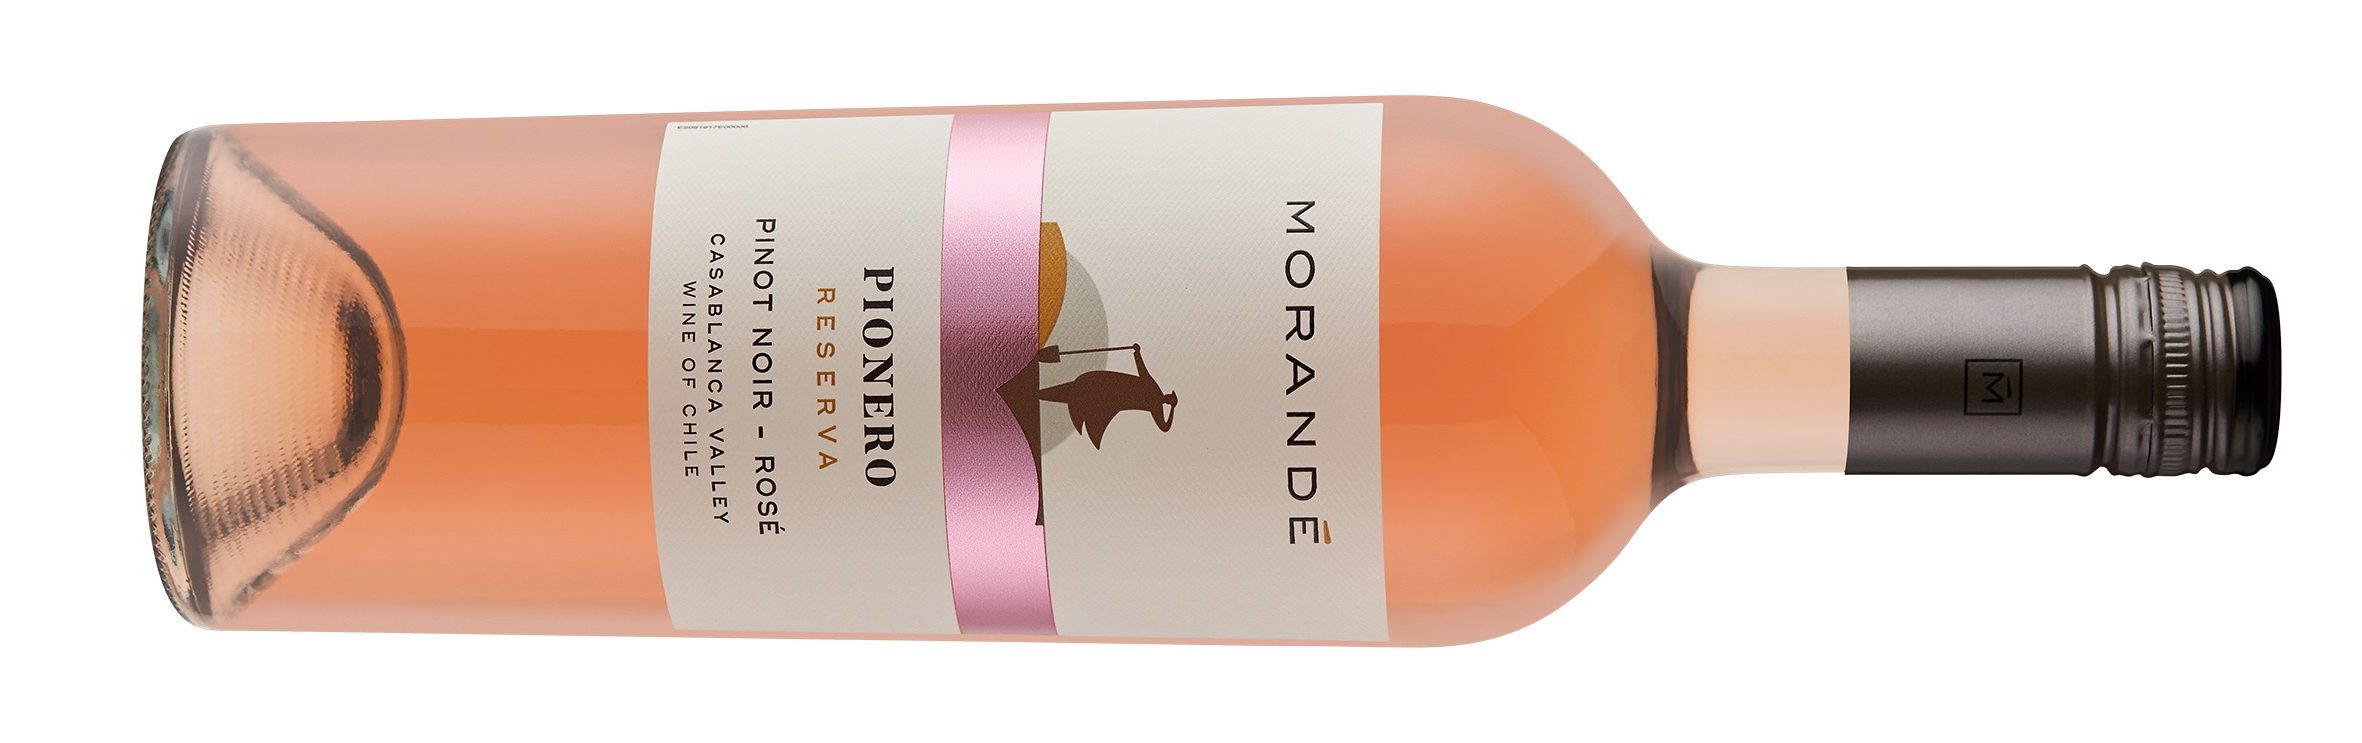 Ya está disponible Pionero Reserva Pinot Noir-Rosé 2019 de Morande